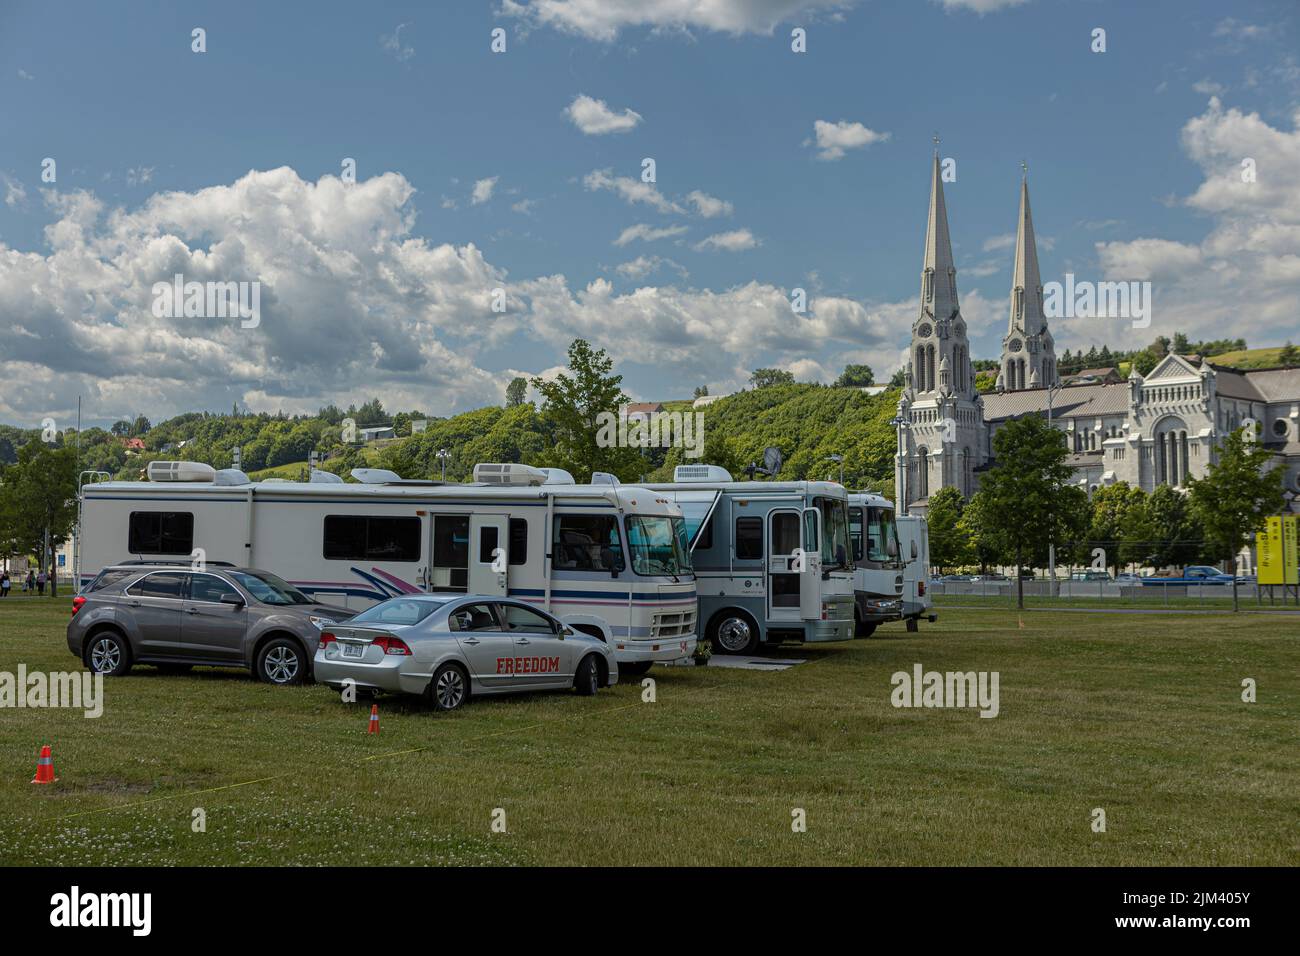 Die RVS sind auf einem Campingplatz vor der Basilika Sainte-Anne-de-Beaupre, östlich von Quebec City, am Freitag, den 15. Juli 2022 abgebildet. Stockfoto